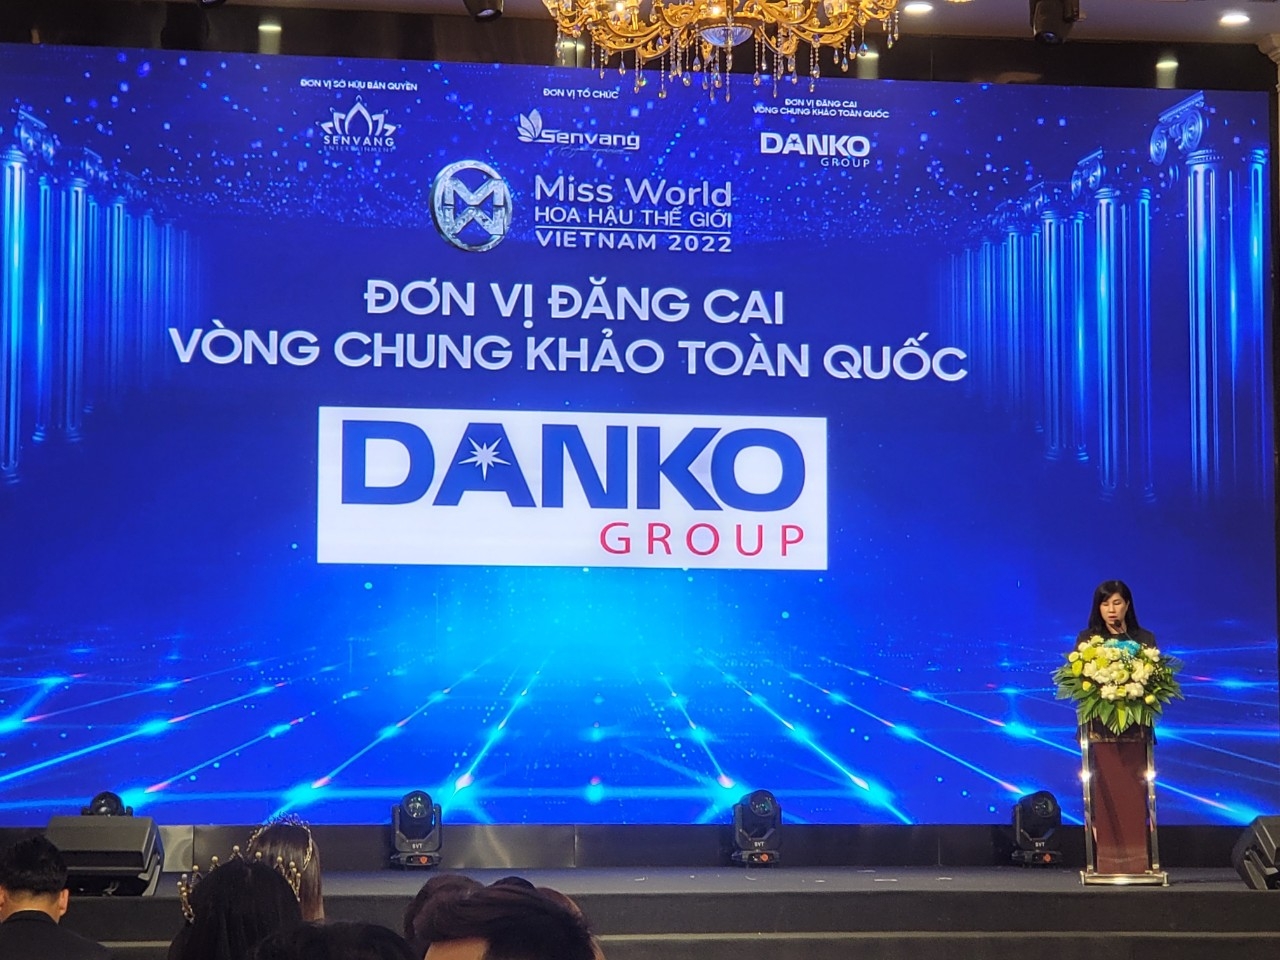 Họp báo Vòng chung khảo Toàn quốc Miss World Vietnam 2022 tại KĐT Danko City